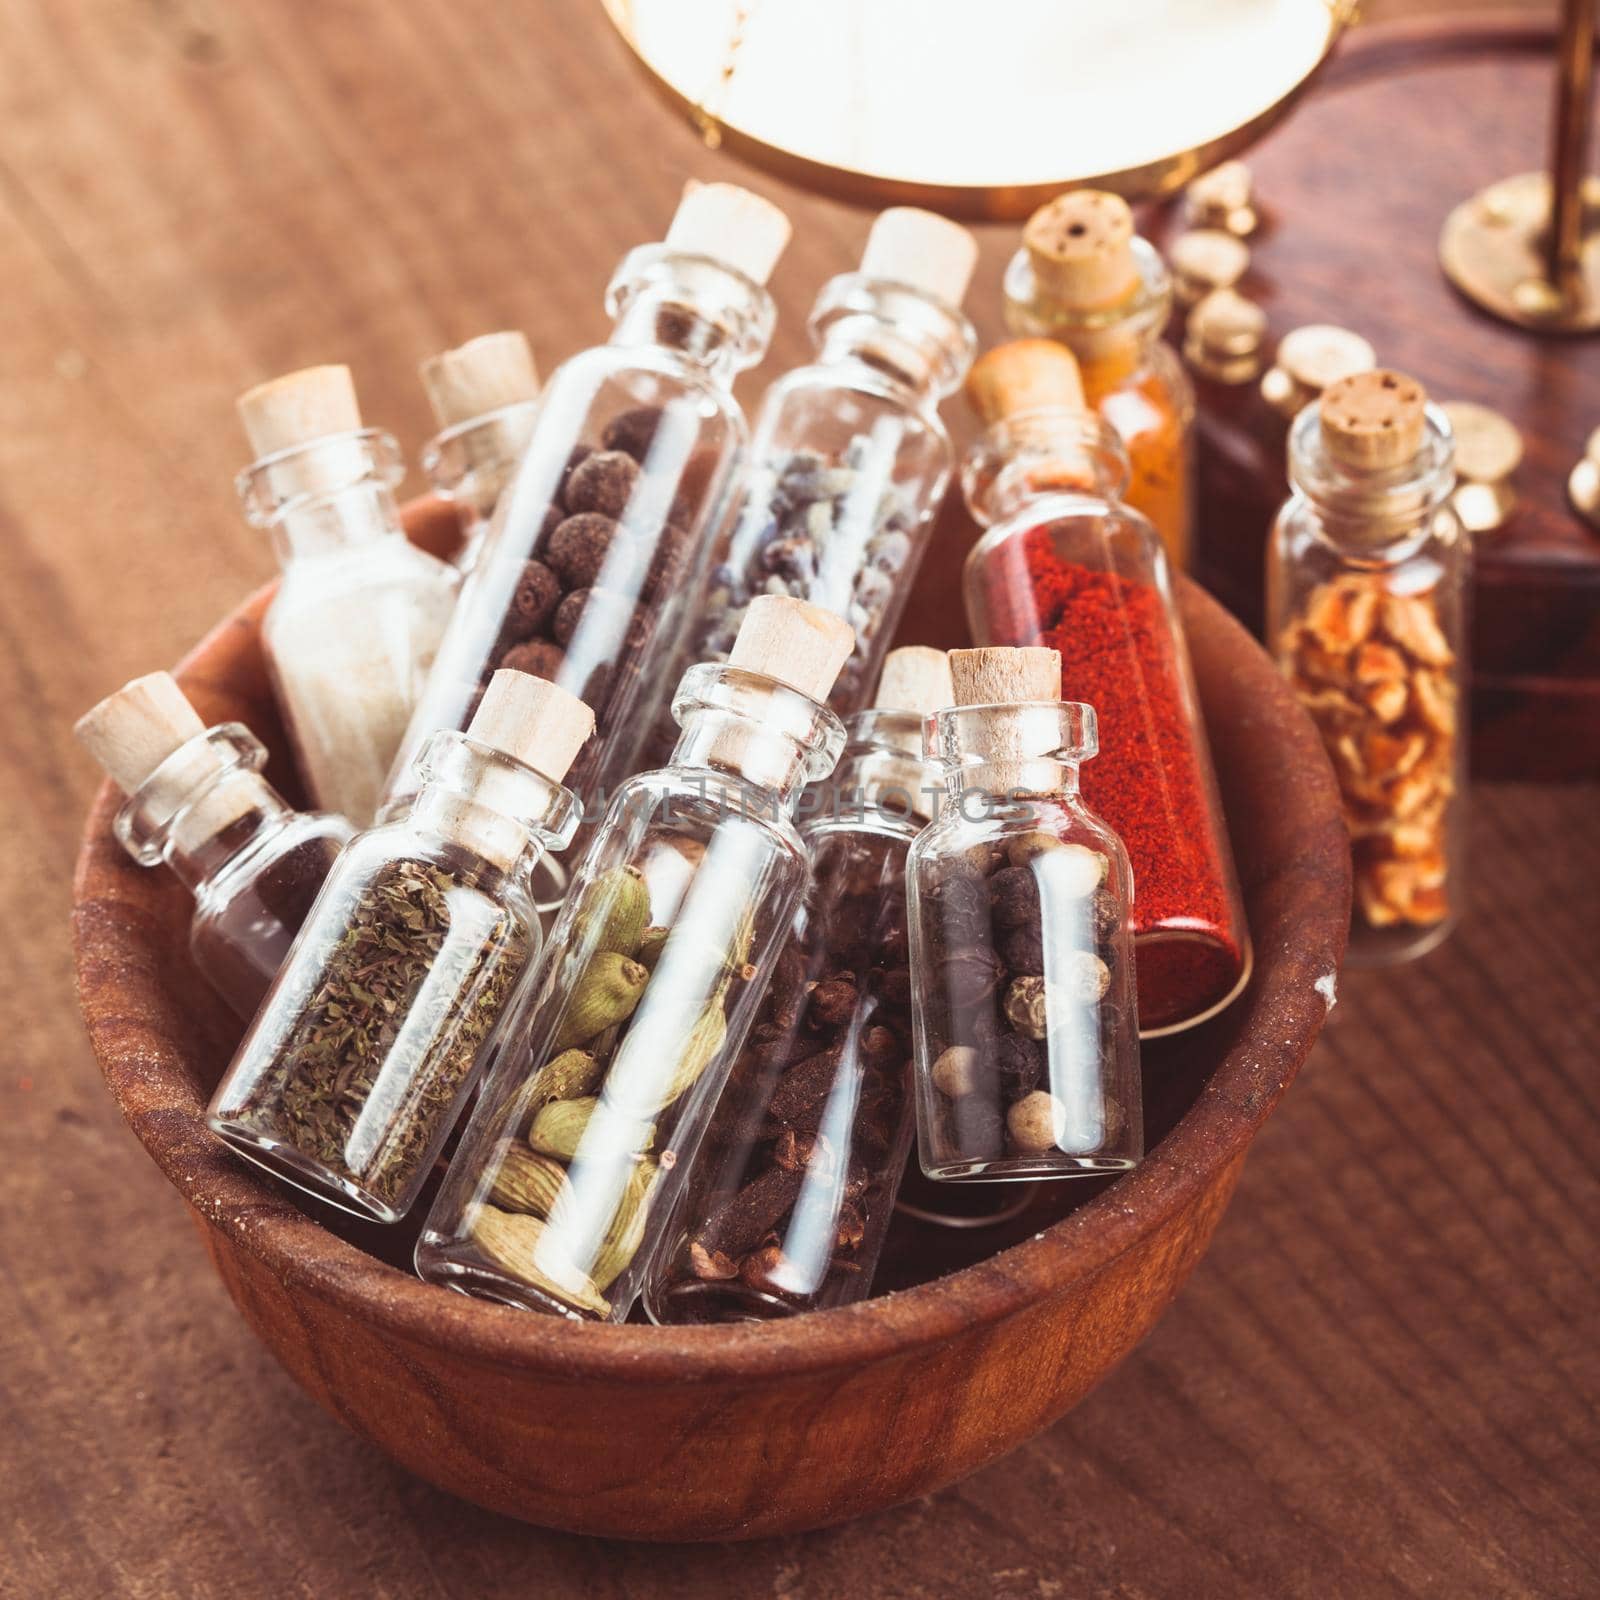 Spice bottles by oksix